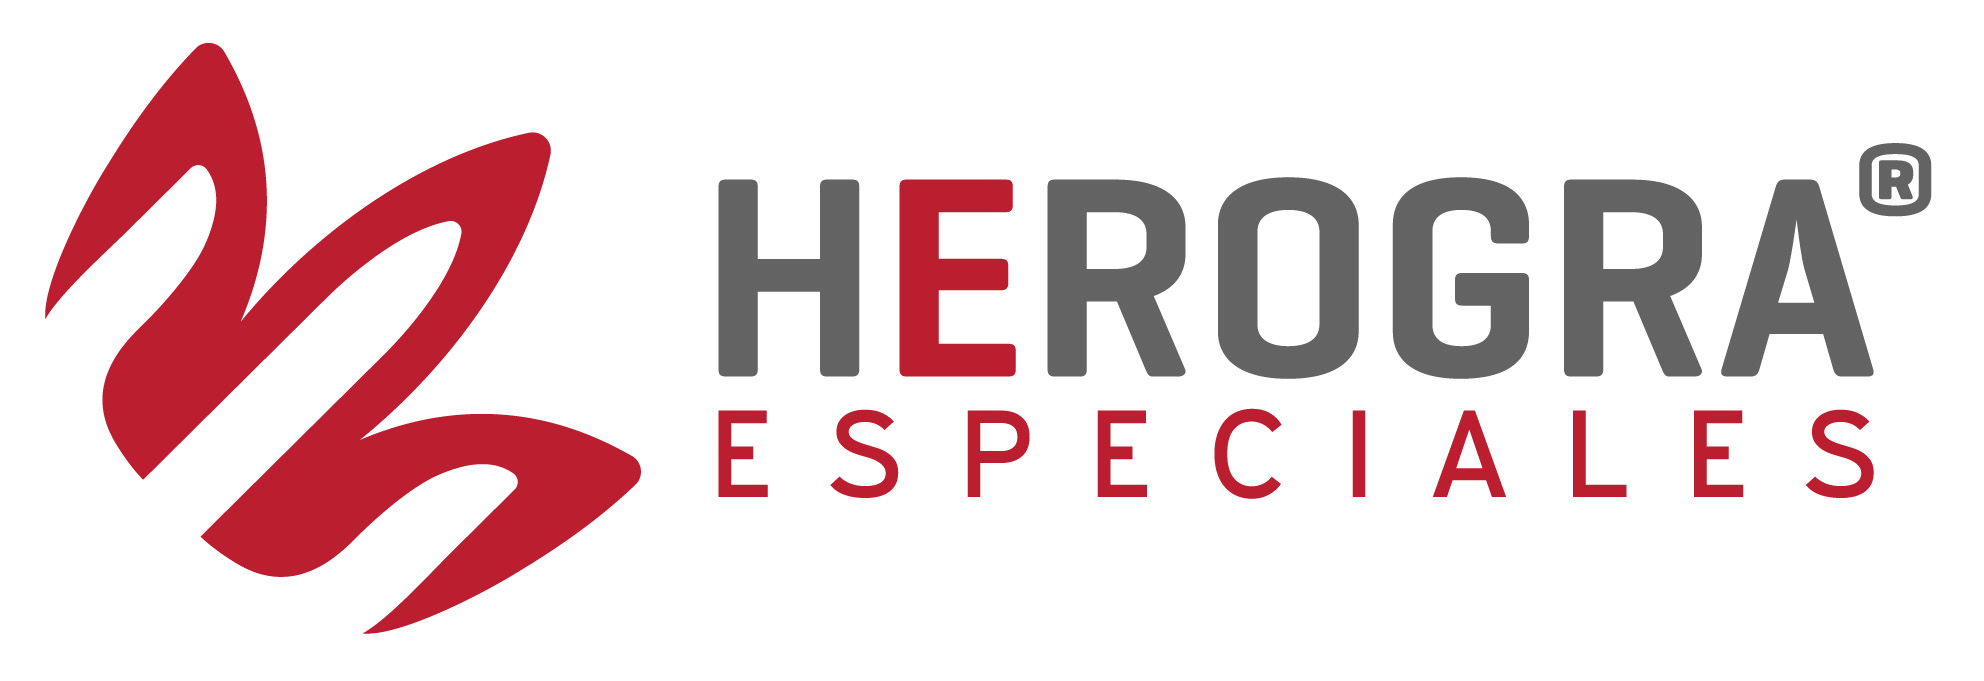 herogra-especiales